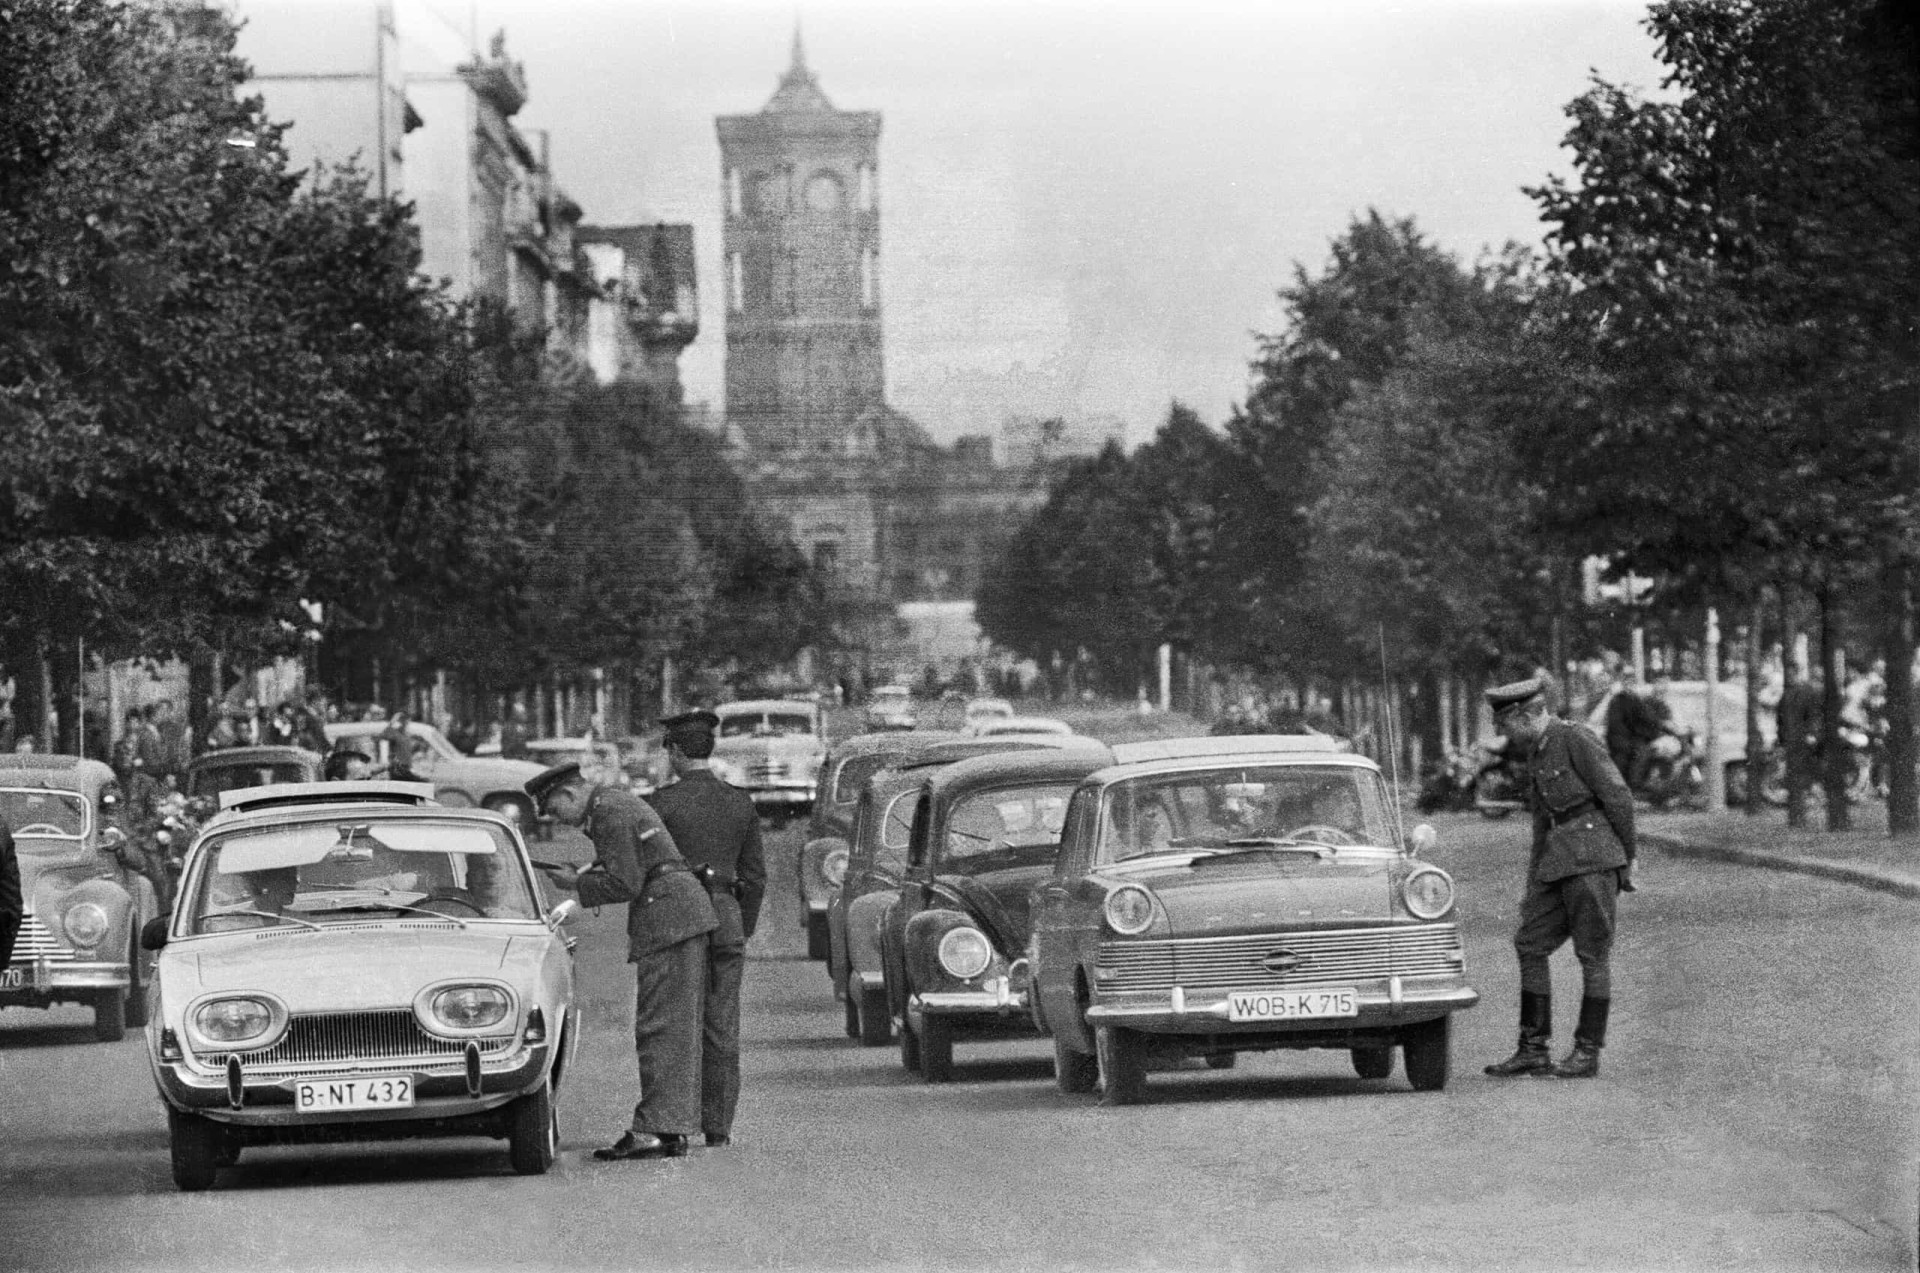 <p>Im Bild: Die DDR-Polizei kontrolliert Anfang August 1961 auf den Straßen Berlins die Fahrzeugpapiere der Autofahrer, nachdem die Ost-West-Grenze in Vorbereitung auf den Mauerbau geschlossen wurde.</p>